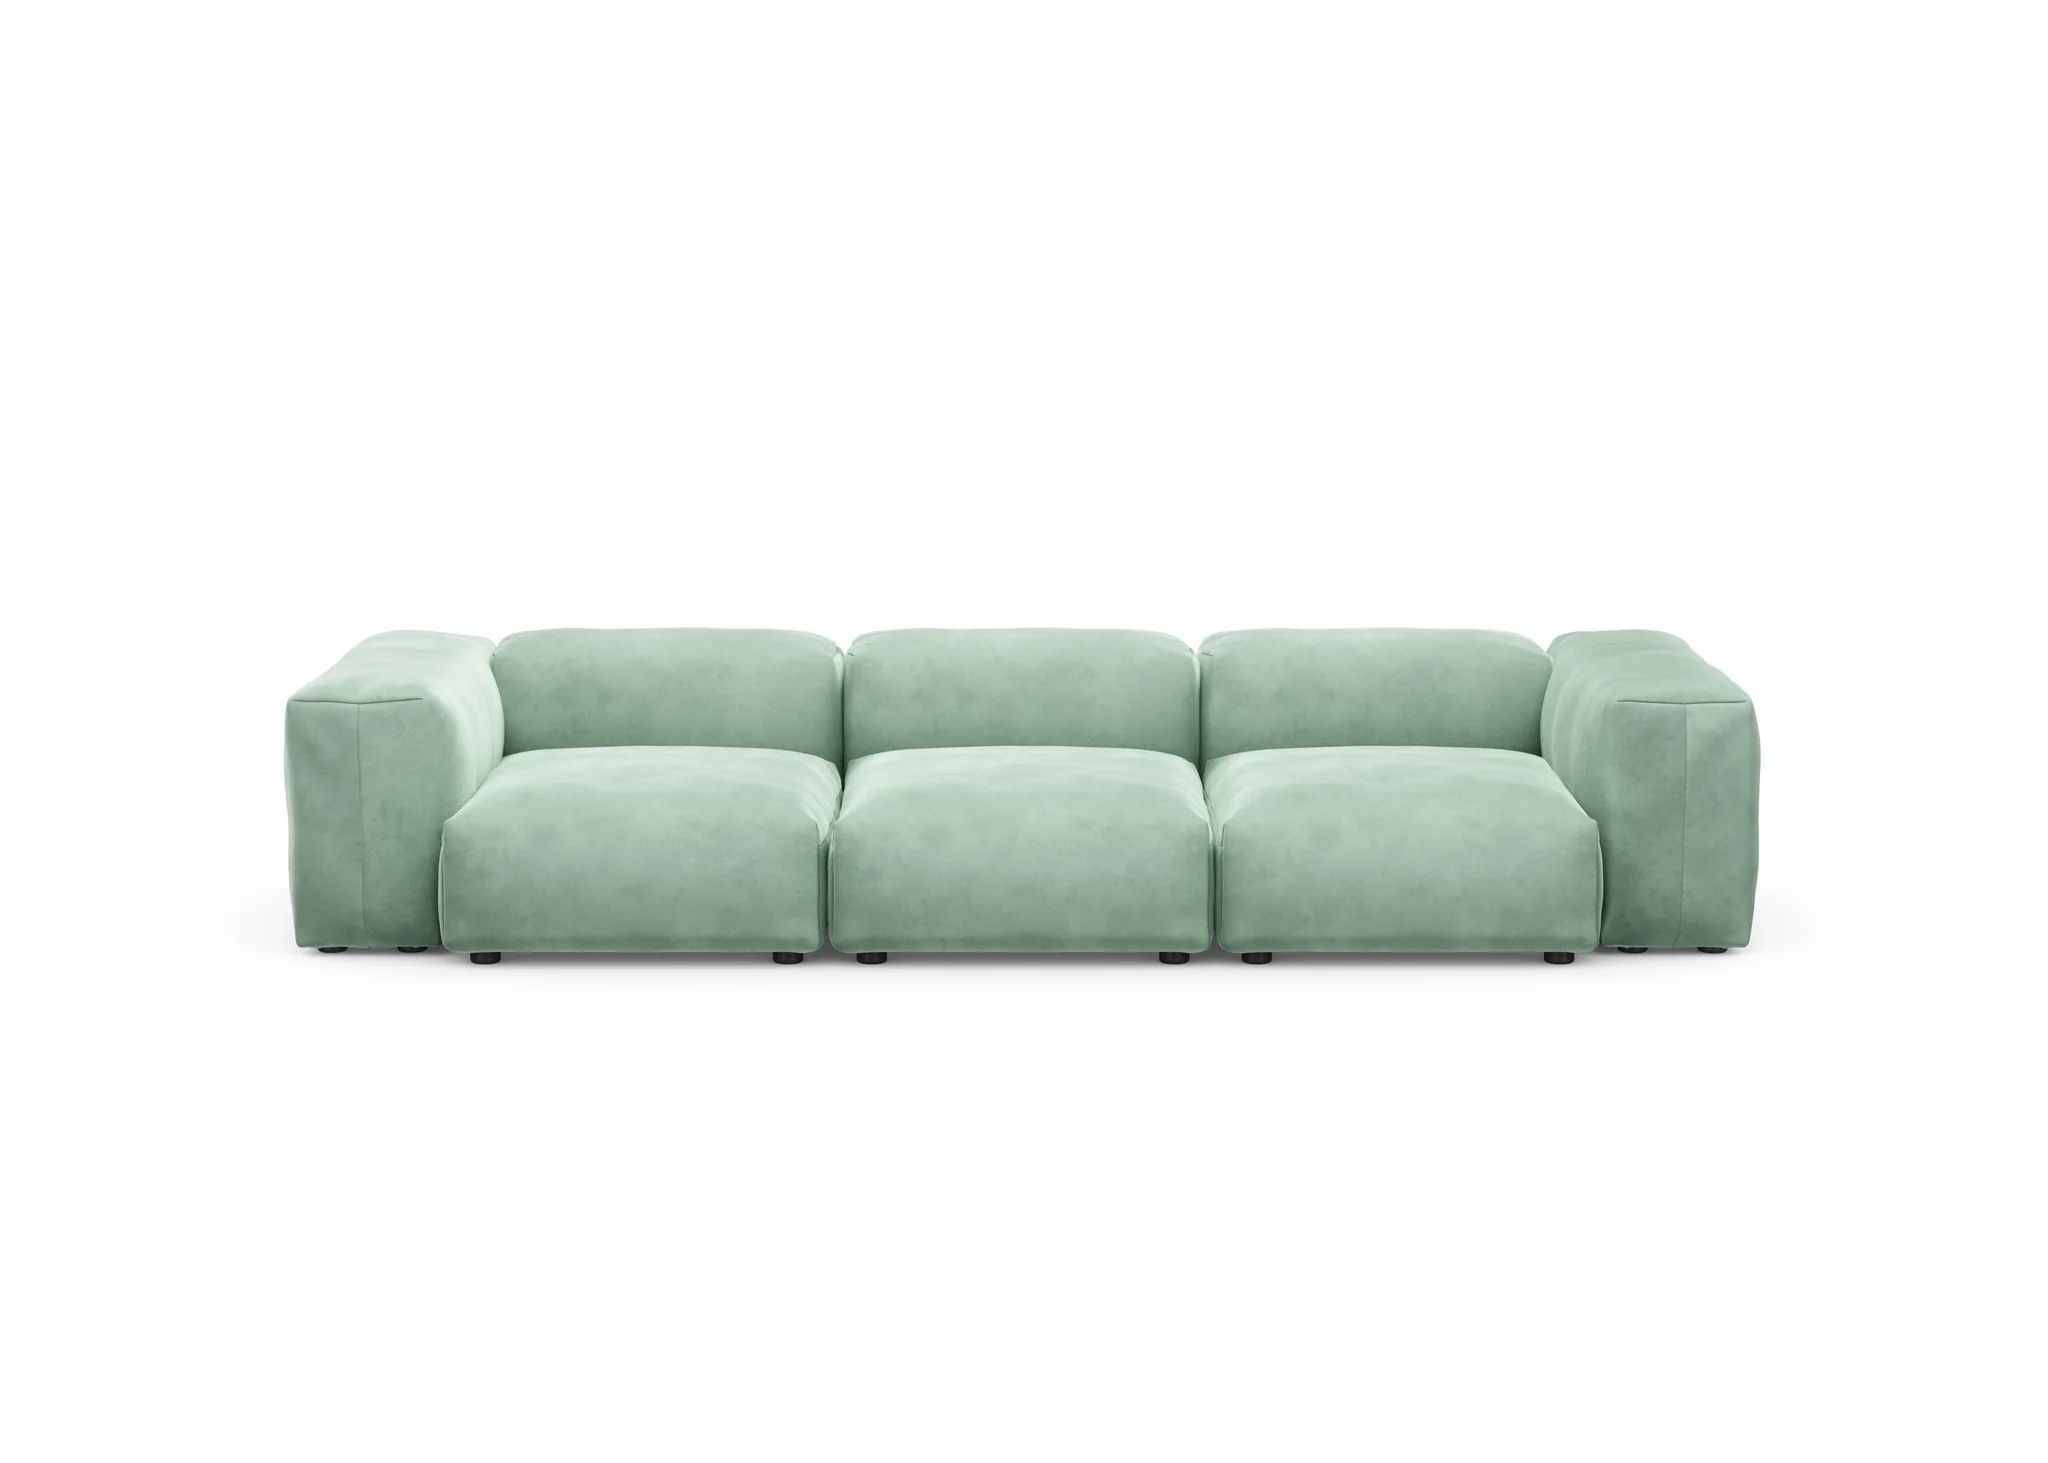   Modular Sofa